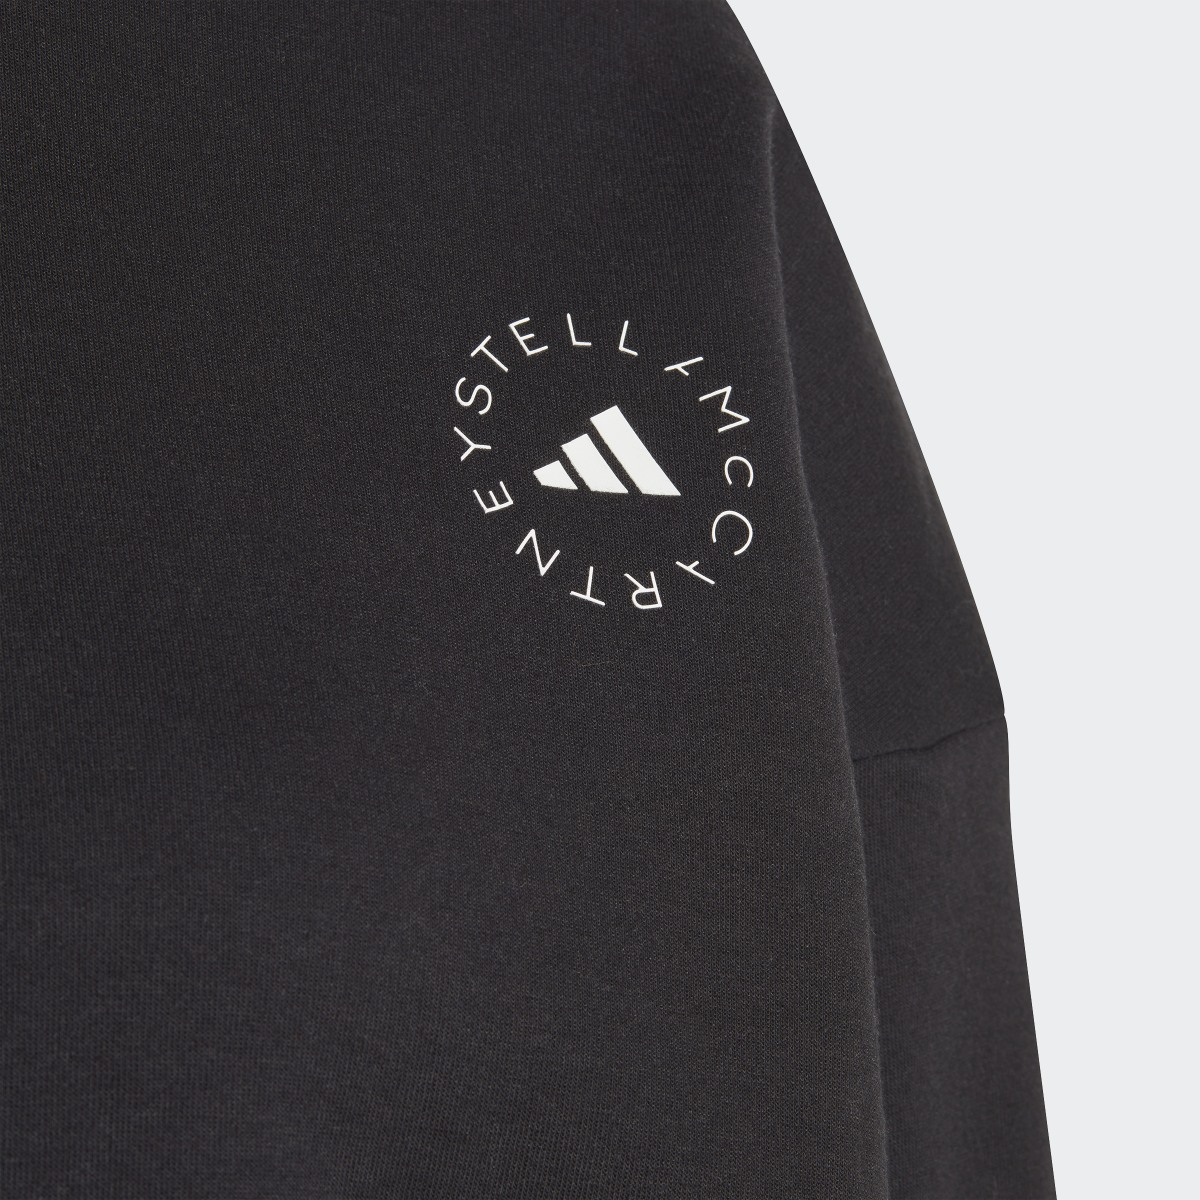 Adidas by Stella McCartney Sweatshirt. 8